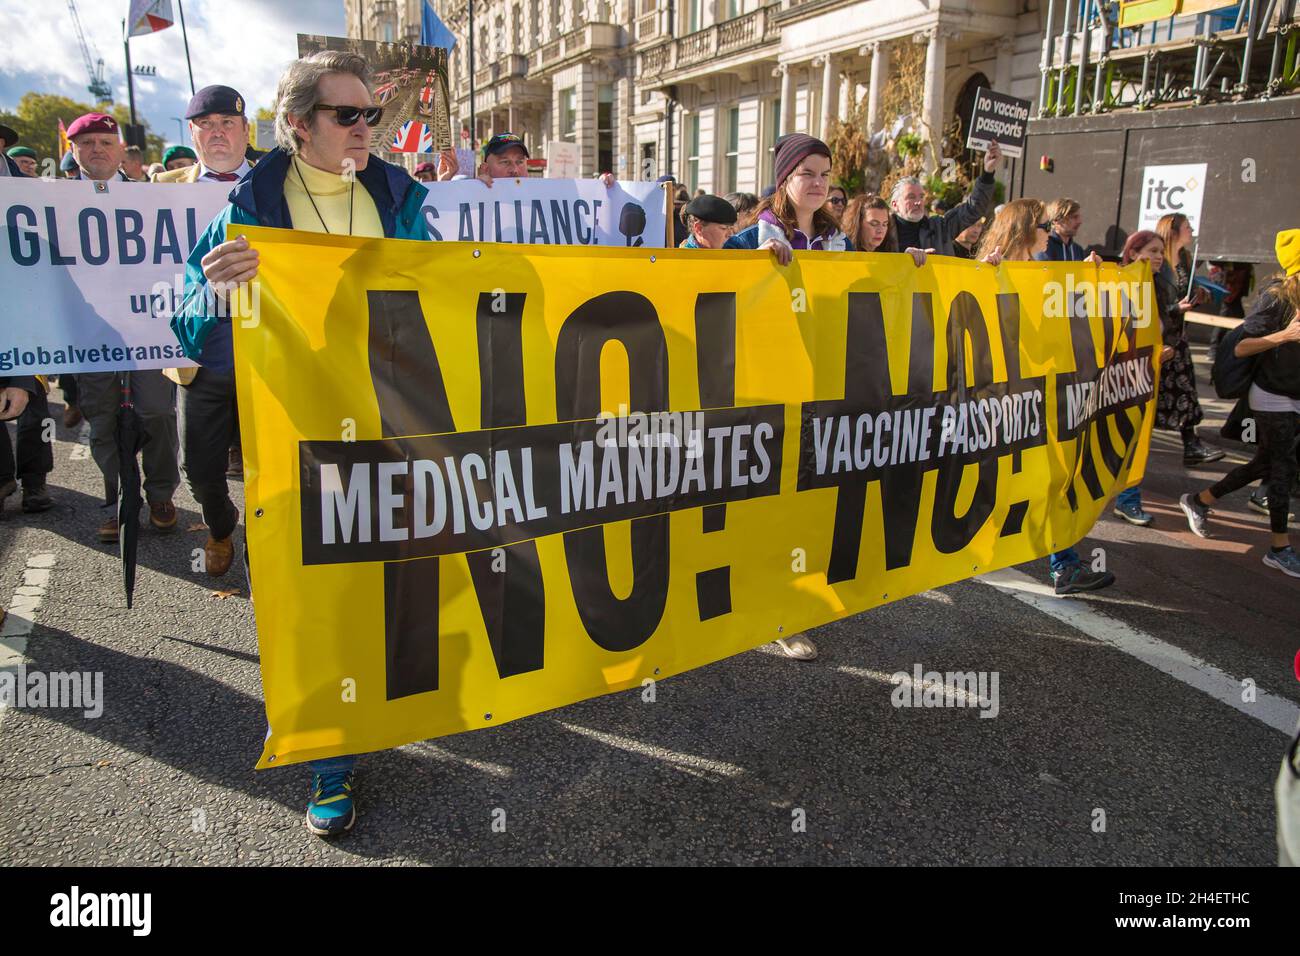 Le persone si riuniscono e marciano durante un raduno Unite per la libertà contro i passaporti dei vaccini nel centro di Londra, 30 ottobre 2021. Foto Stock